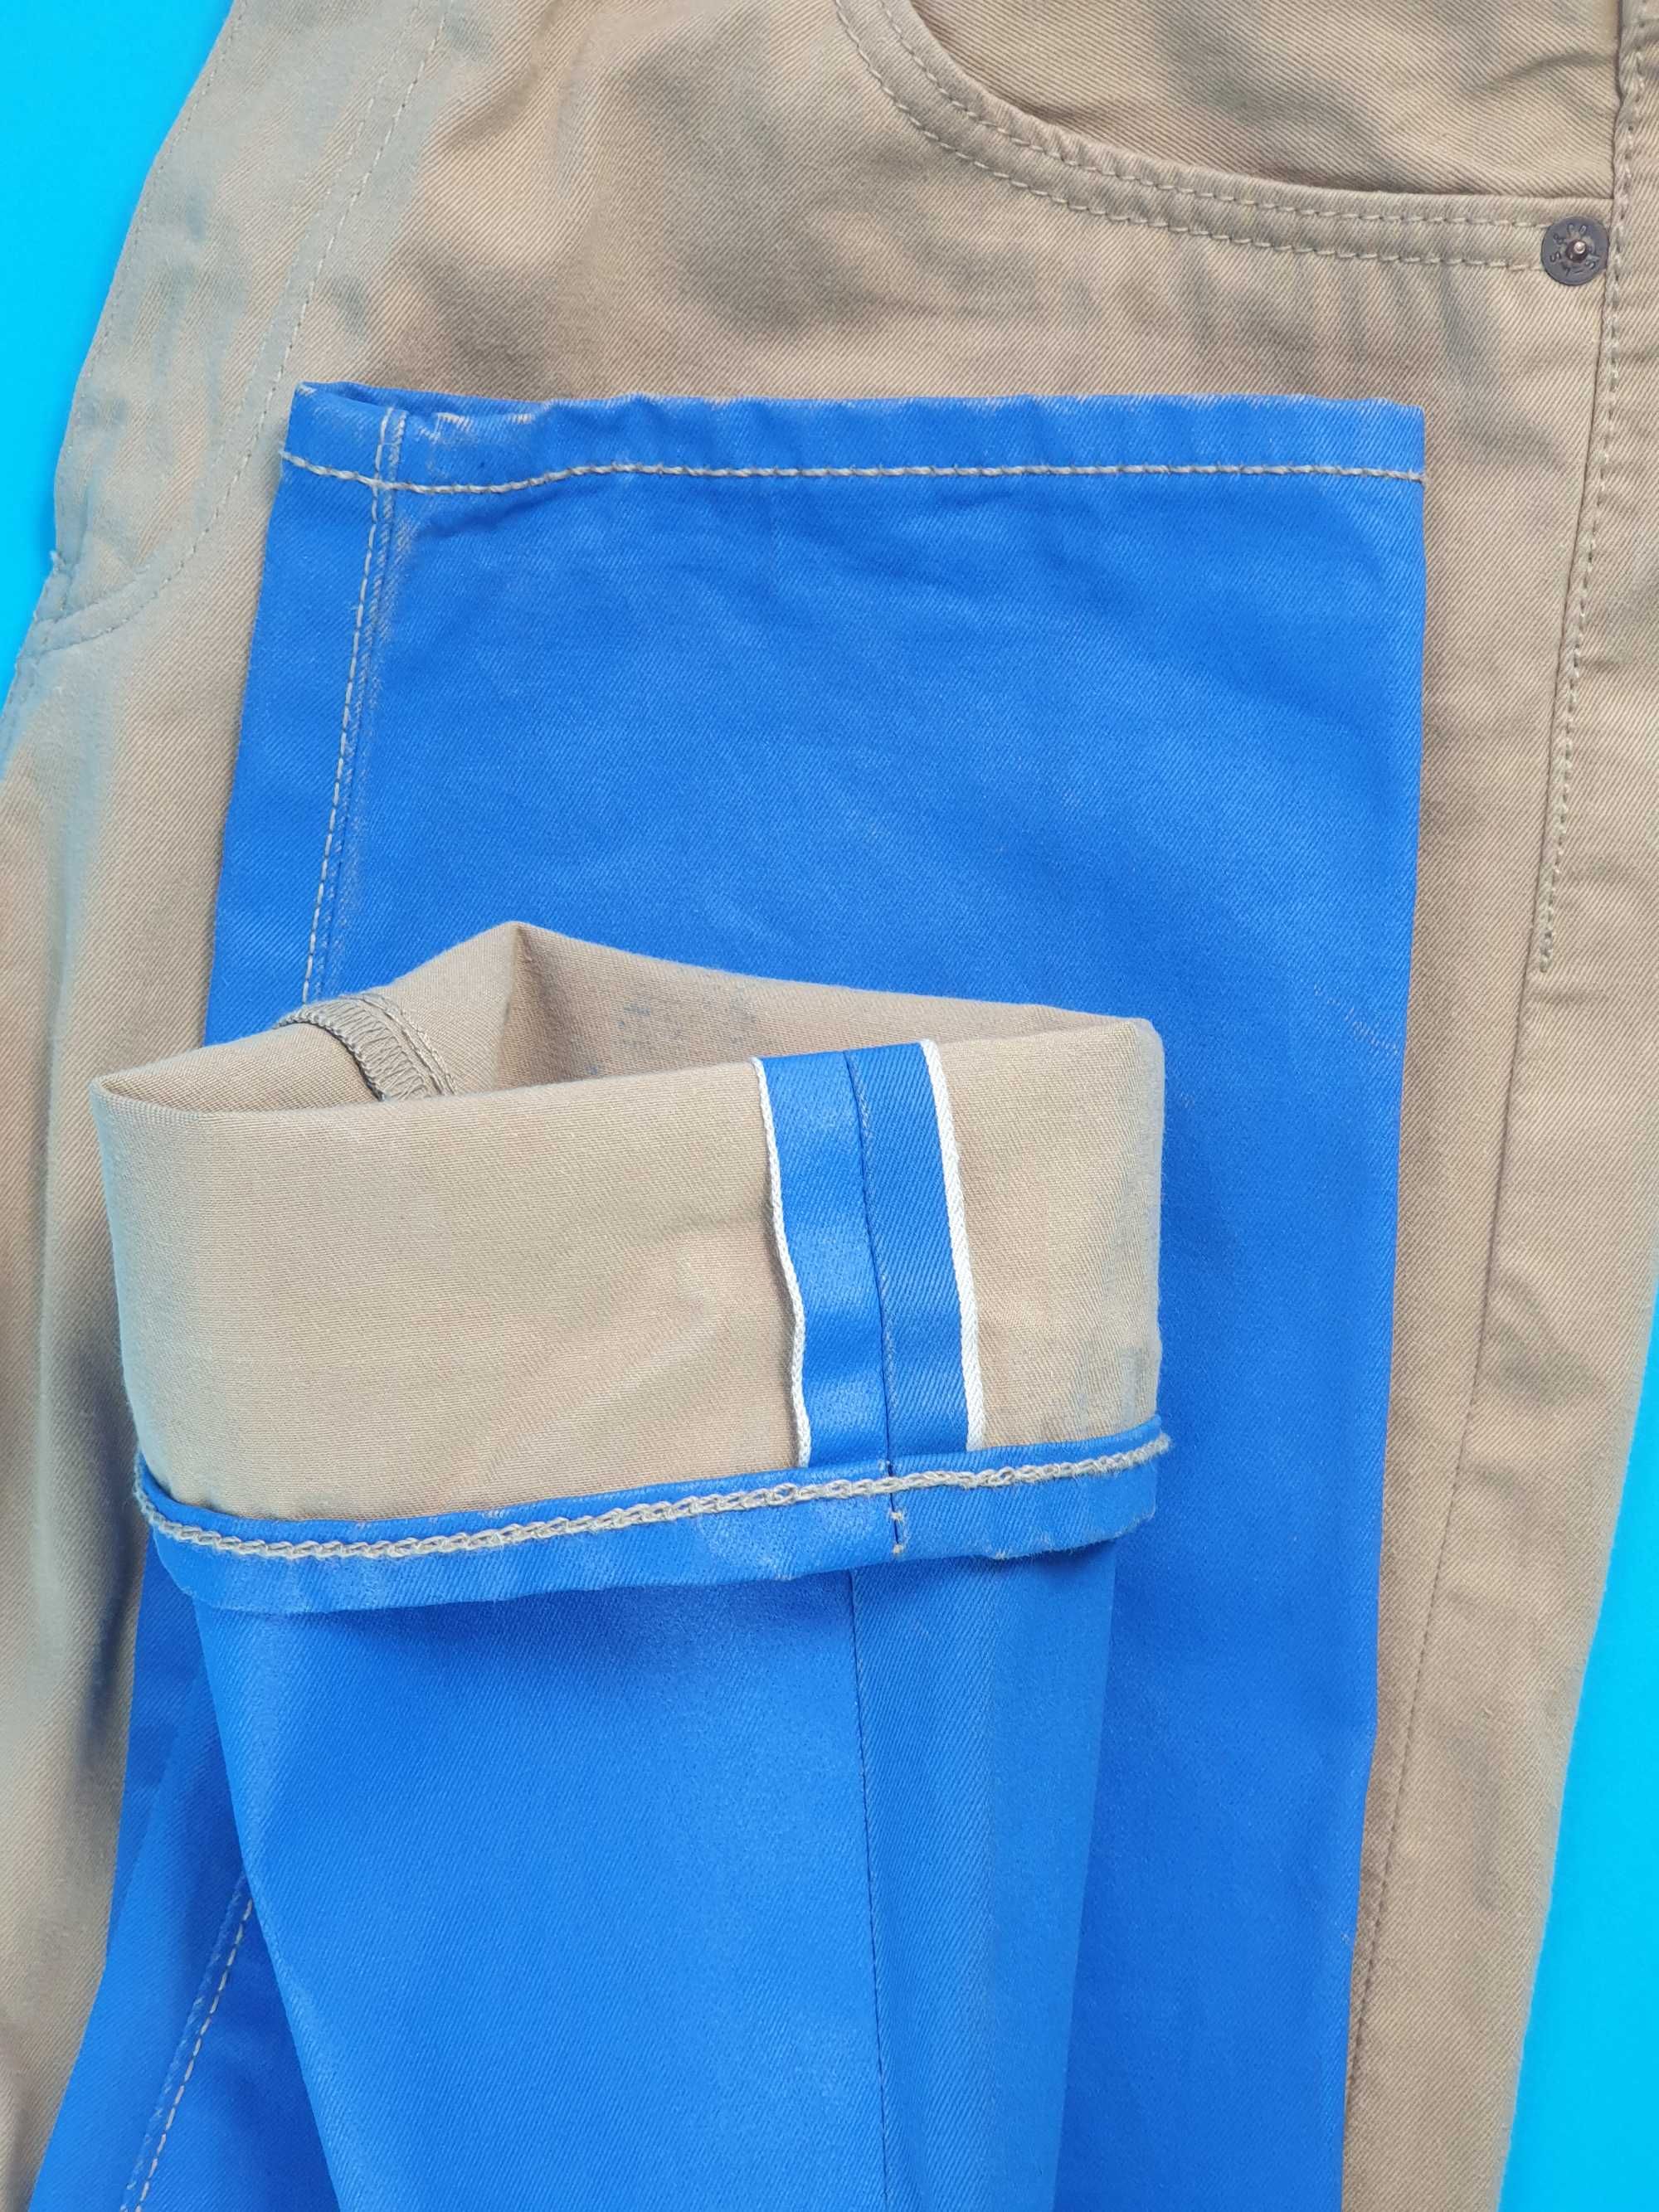 Levi's 508 W30 L32 beżowe jeansy niebieski dekor taper selvedge